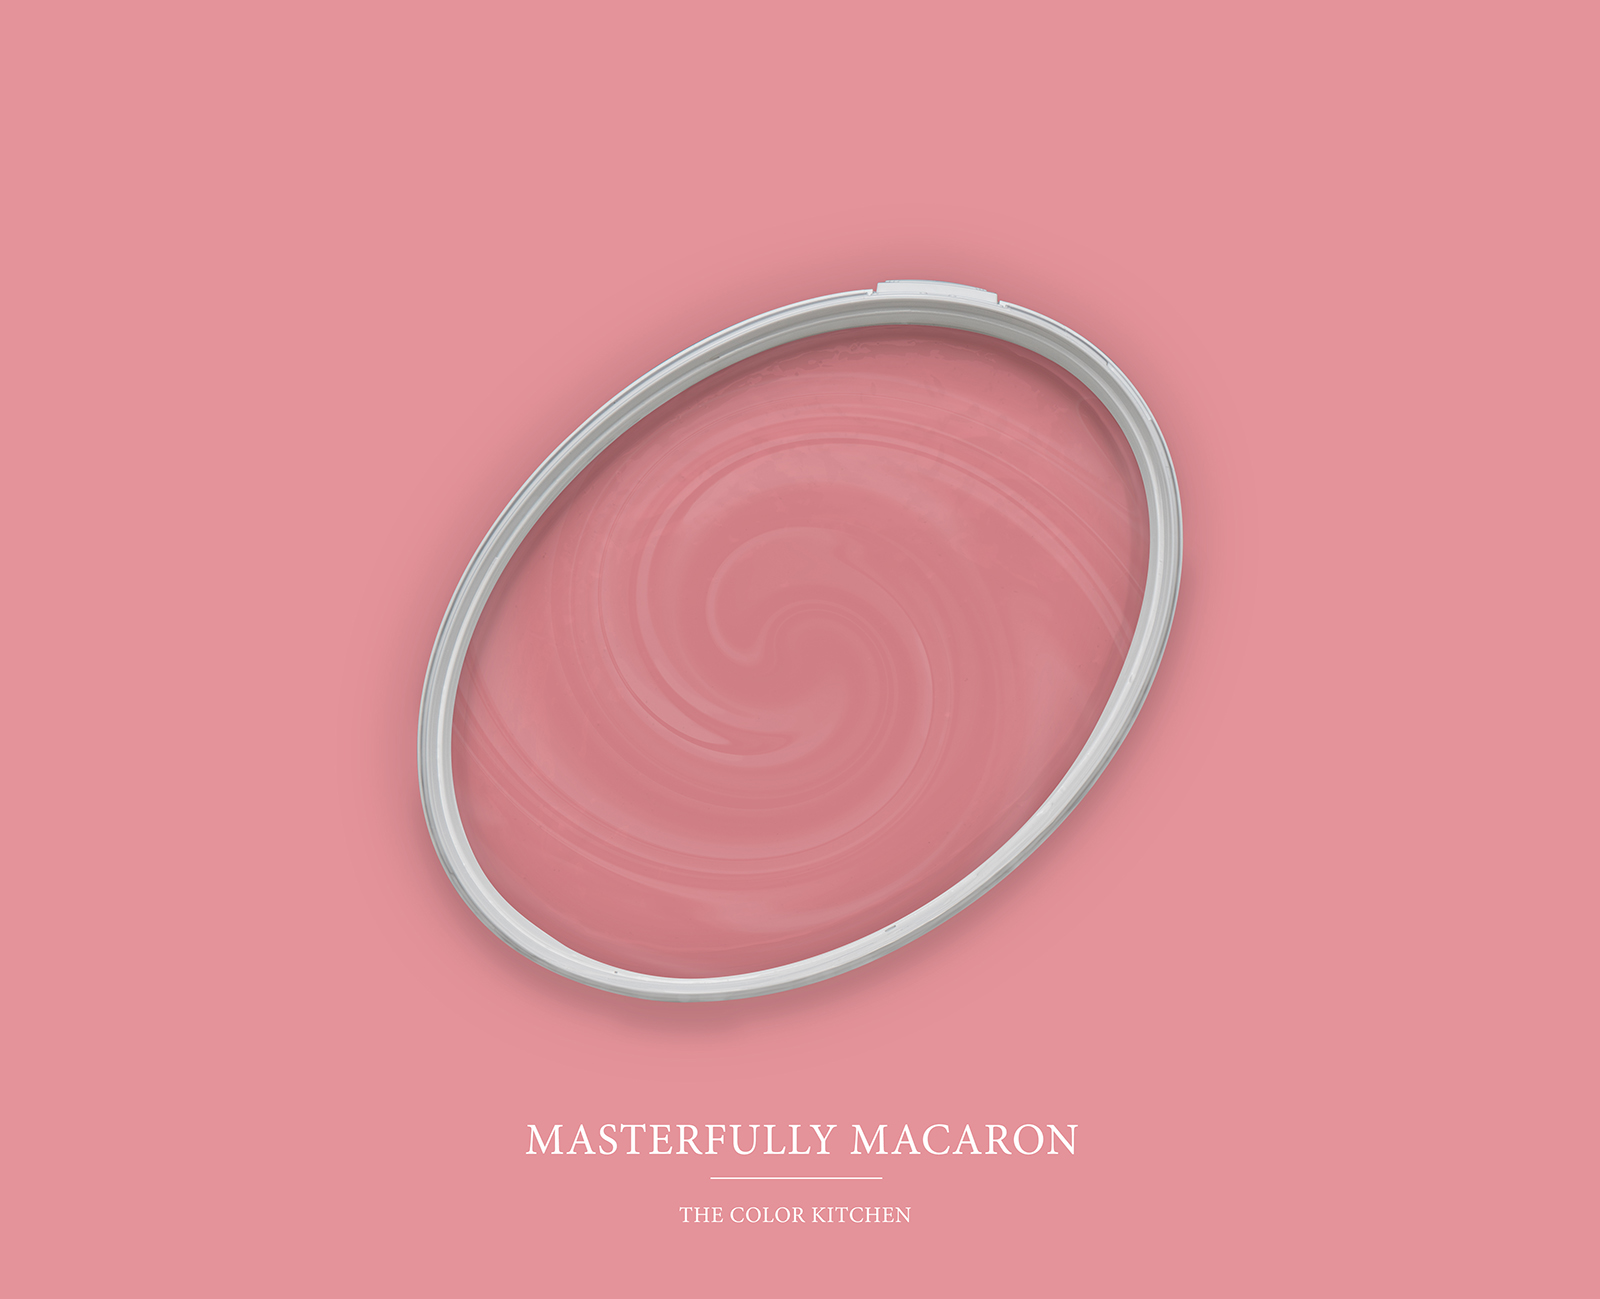 Wandfarbe in lebendigem Pink »Masterfully Macaron« TCK7010 – 5 Liter
